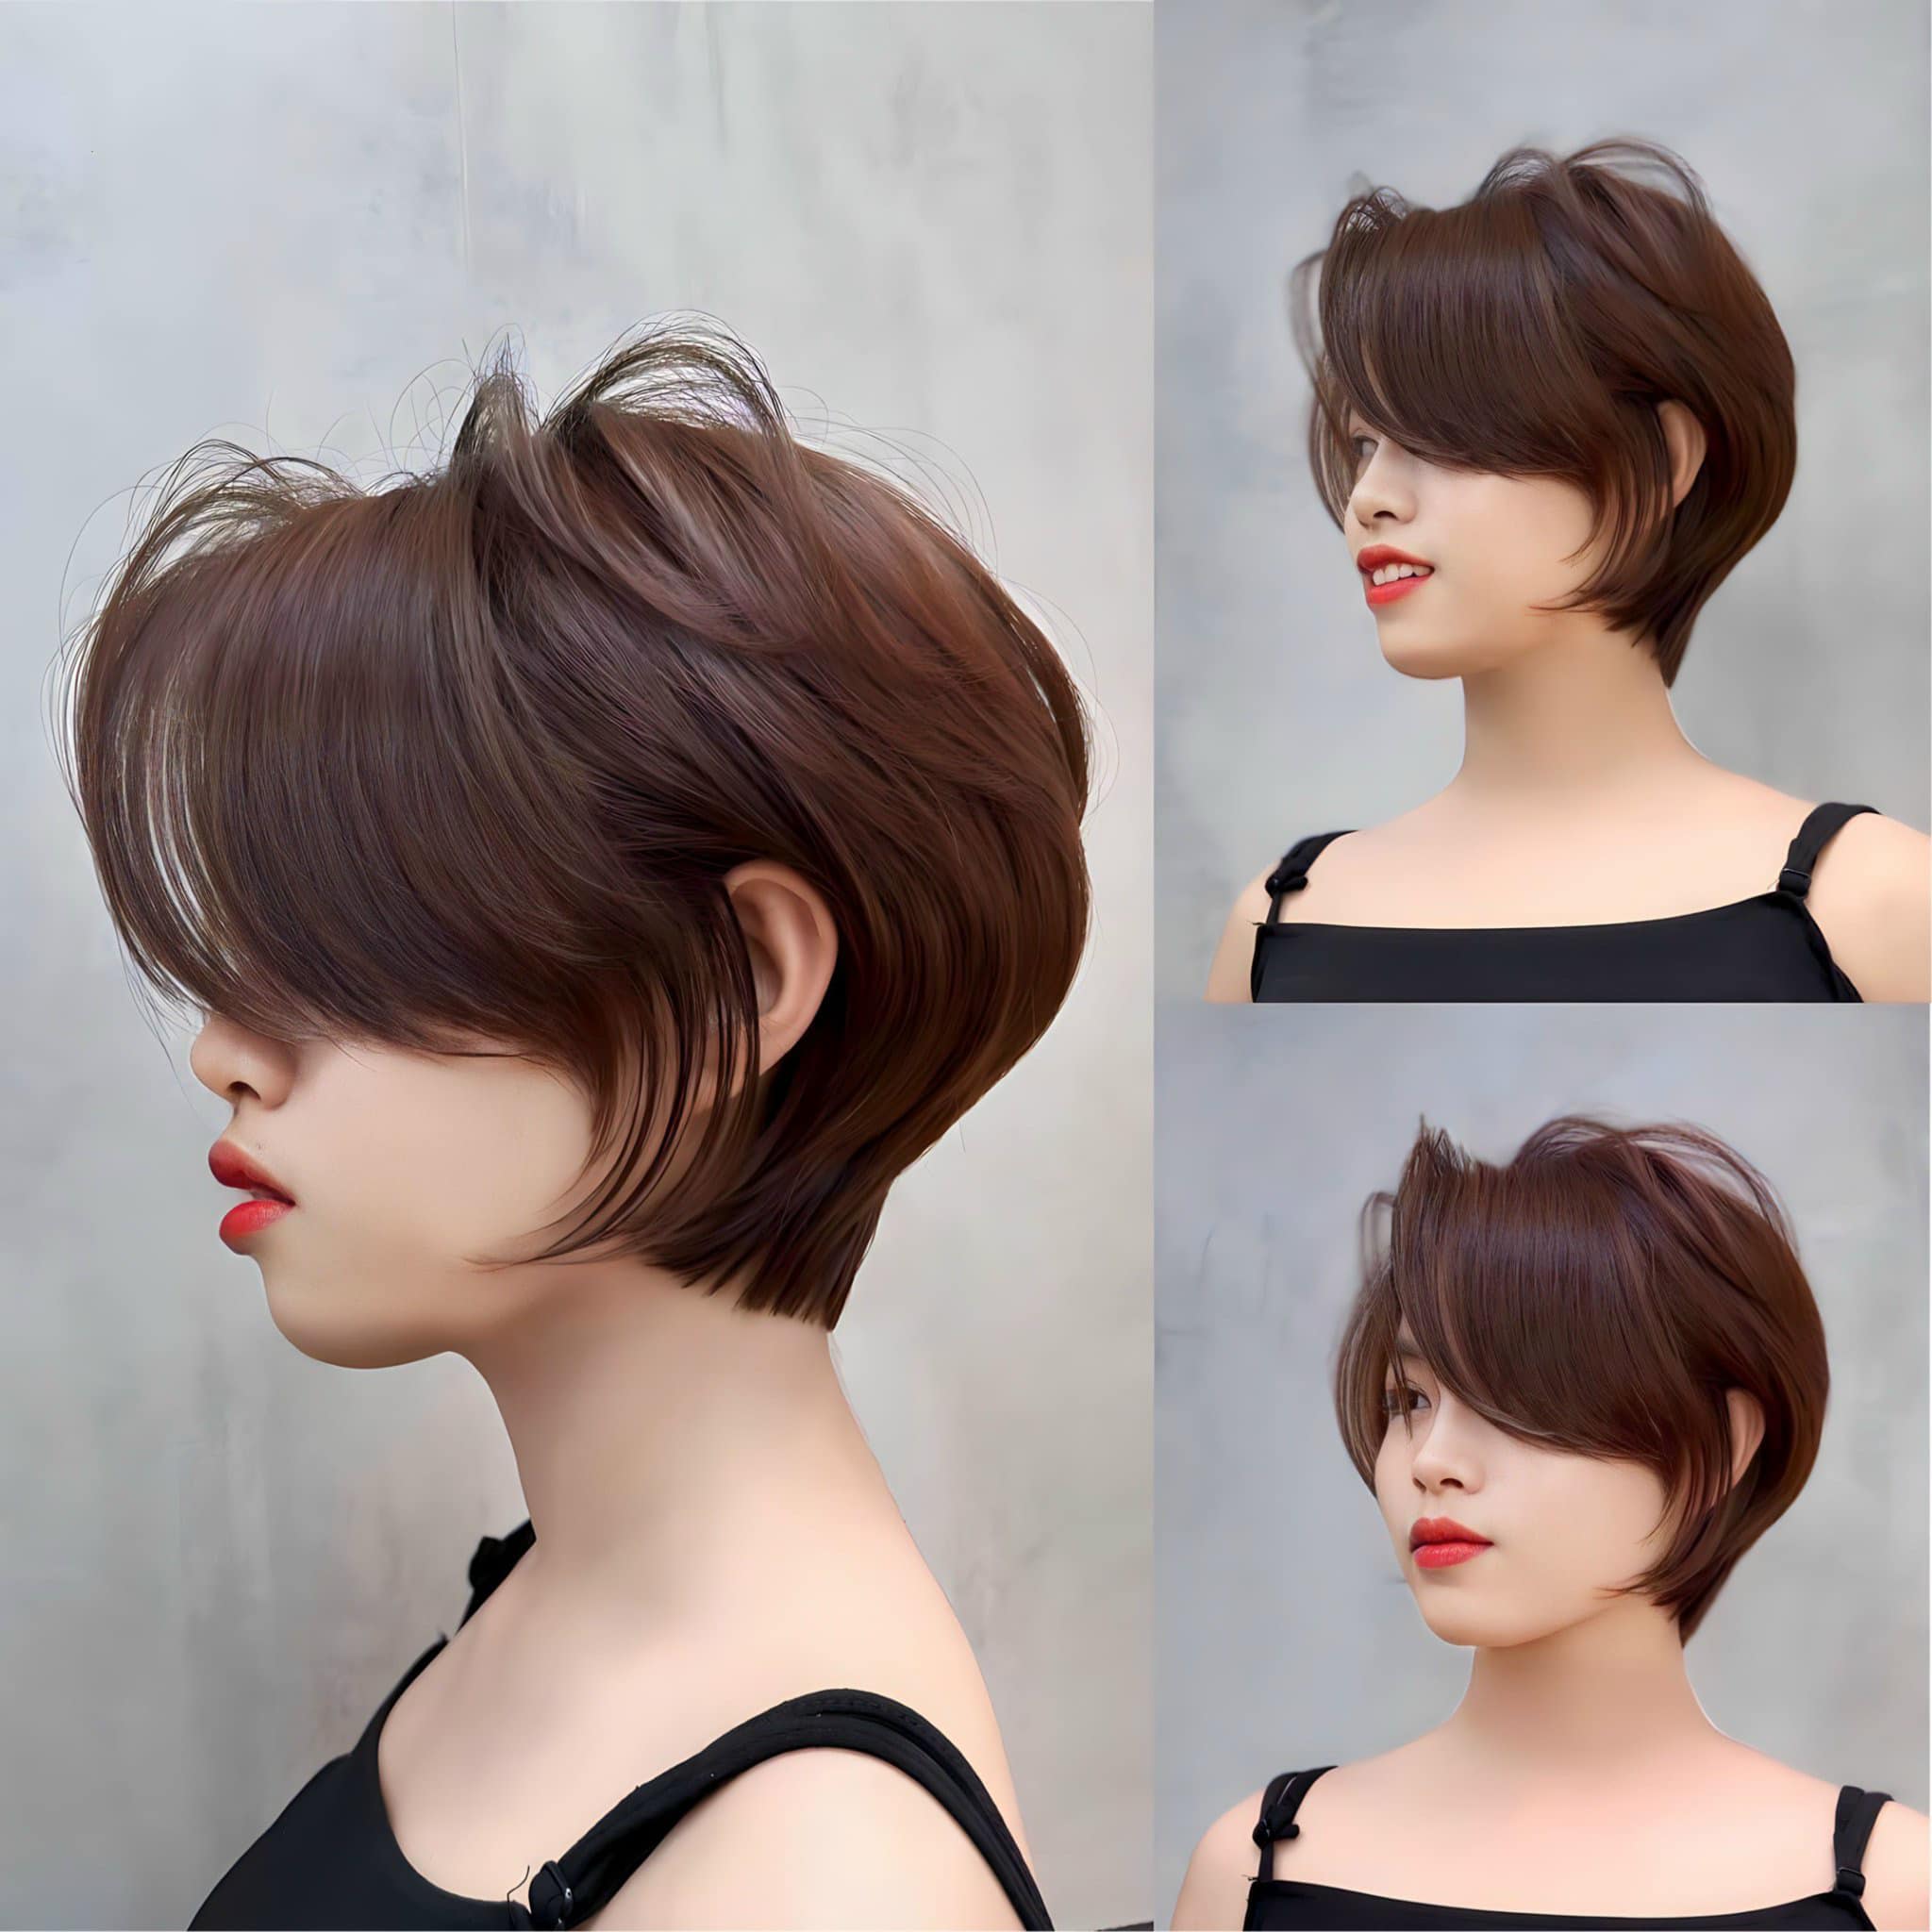 Hair Salon Thanh Phương Đông ảnh 3